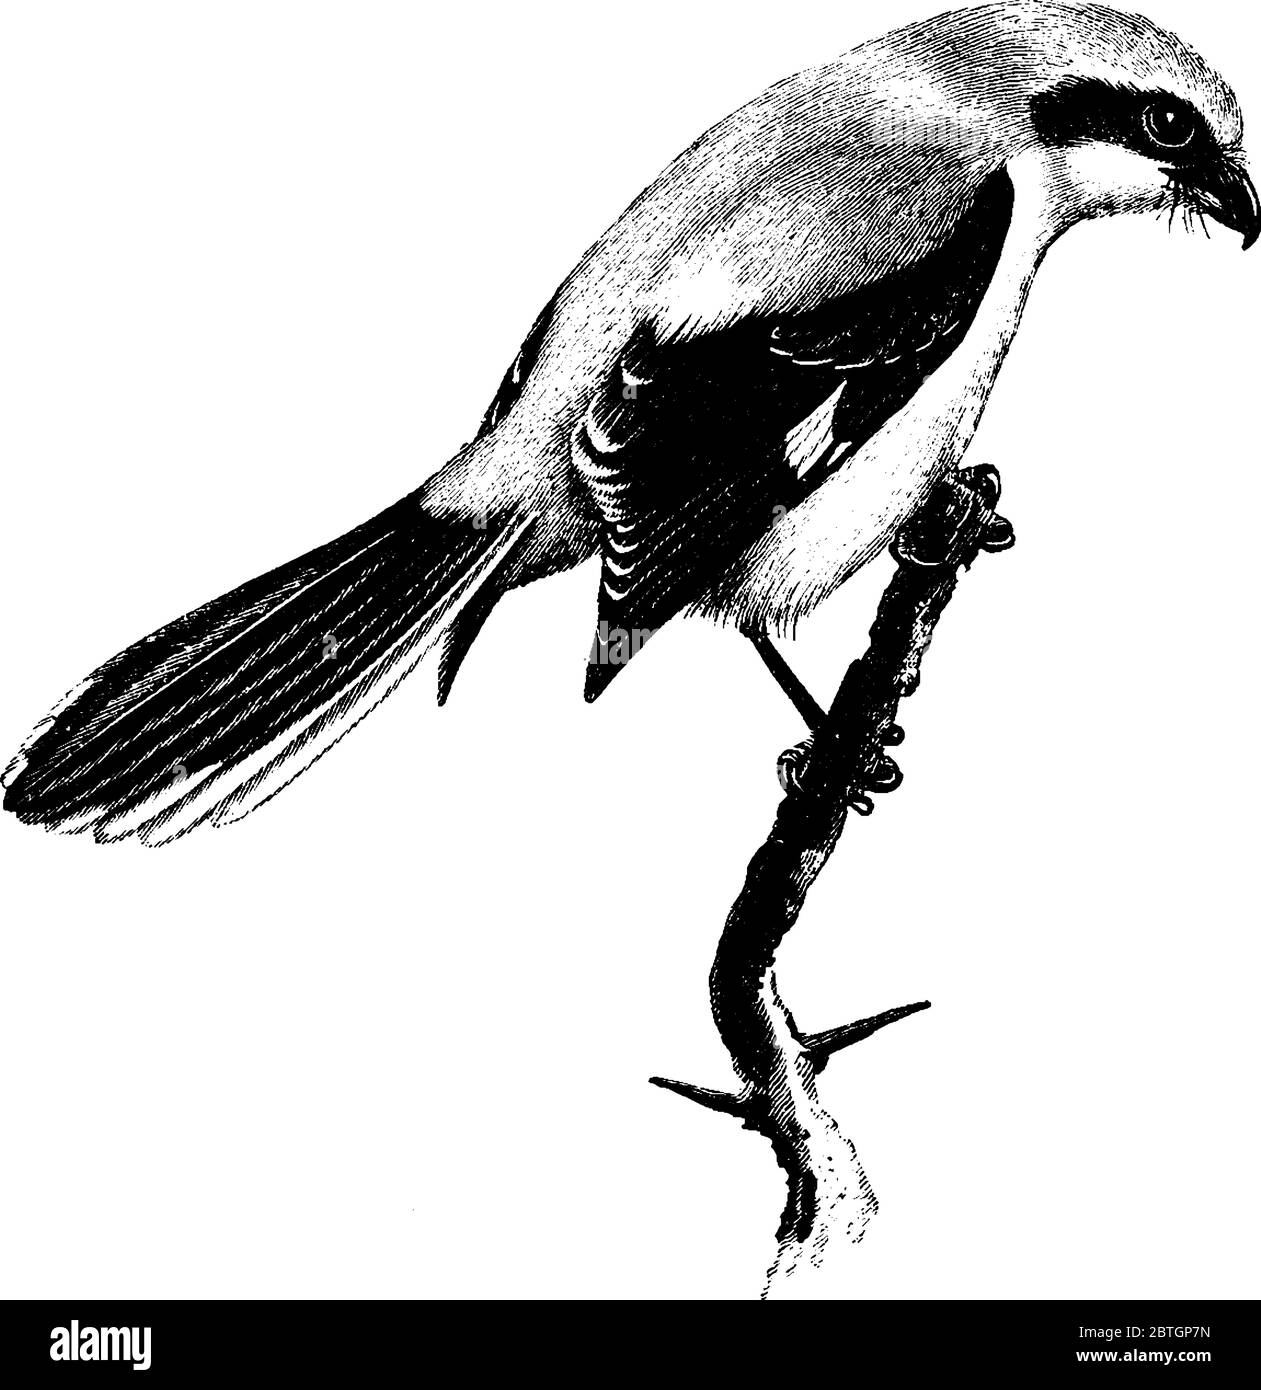 Großwürger ist ein großer Singvogel mit mittellang Schwanz, weiß von Skapularen, Flügel und Schwanz deutlich sichtbar im Flug., Vintage Line drawin Stock Vektor